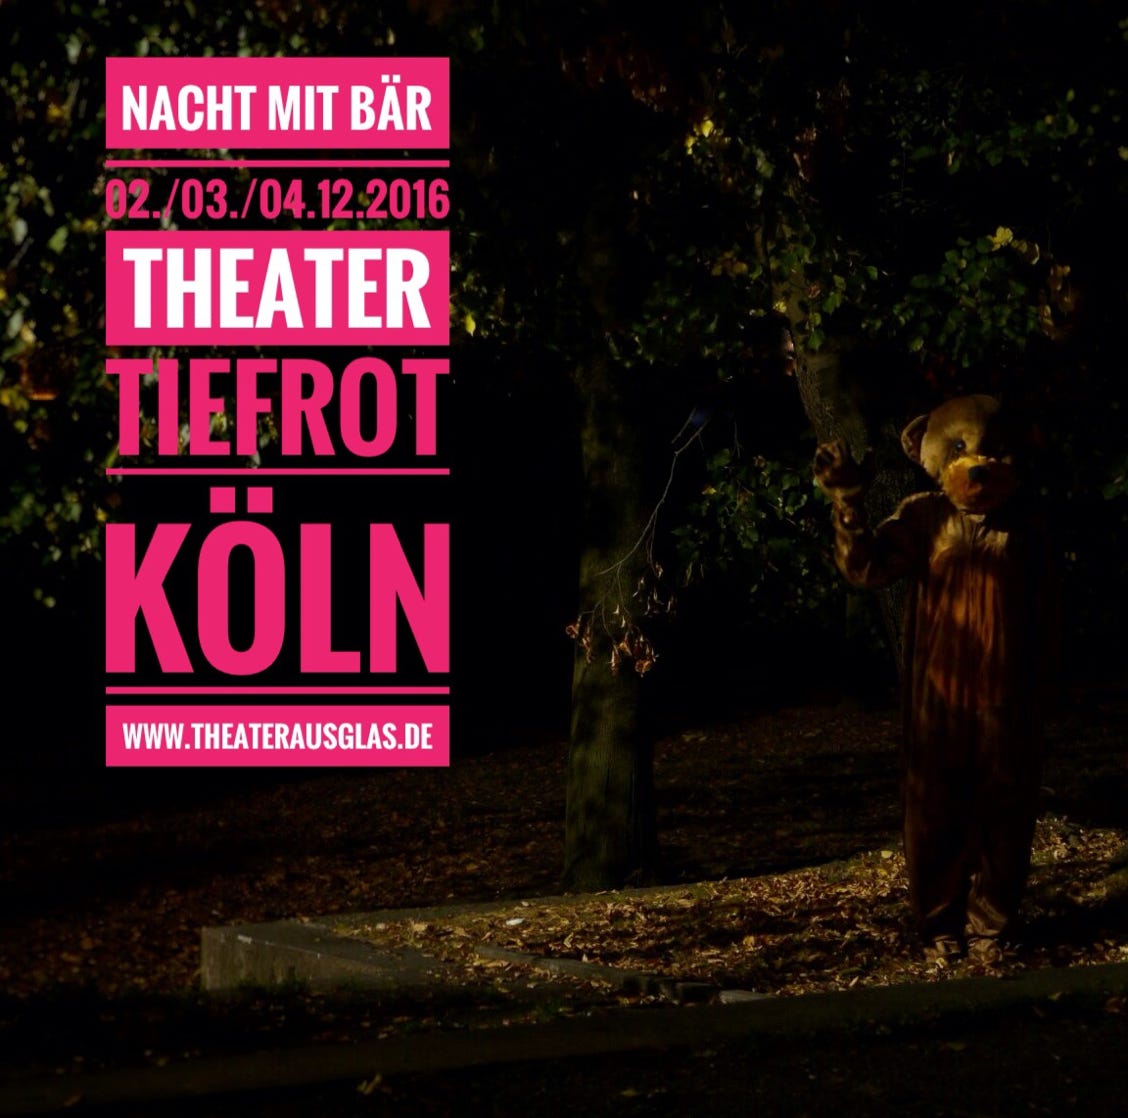 Plakat von Nacht mit Baer von Viktoria Burkert, Köln. Musik von Markus Schimpp